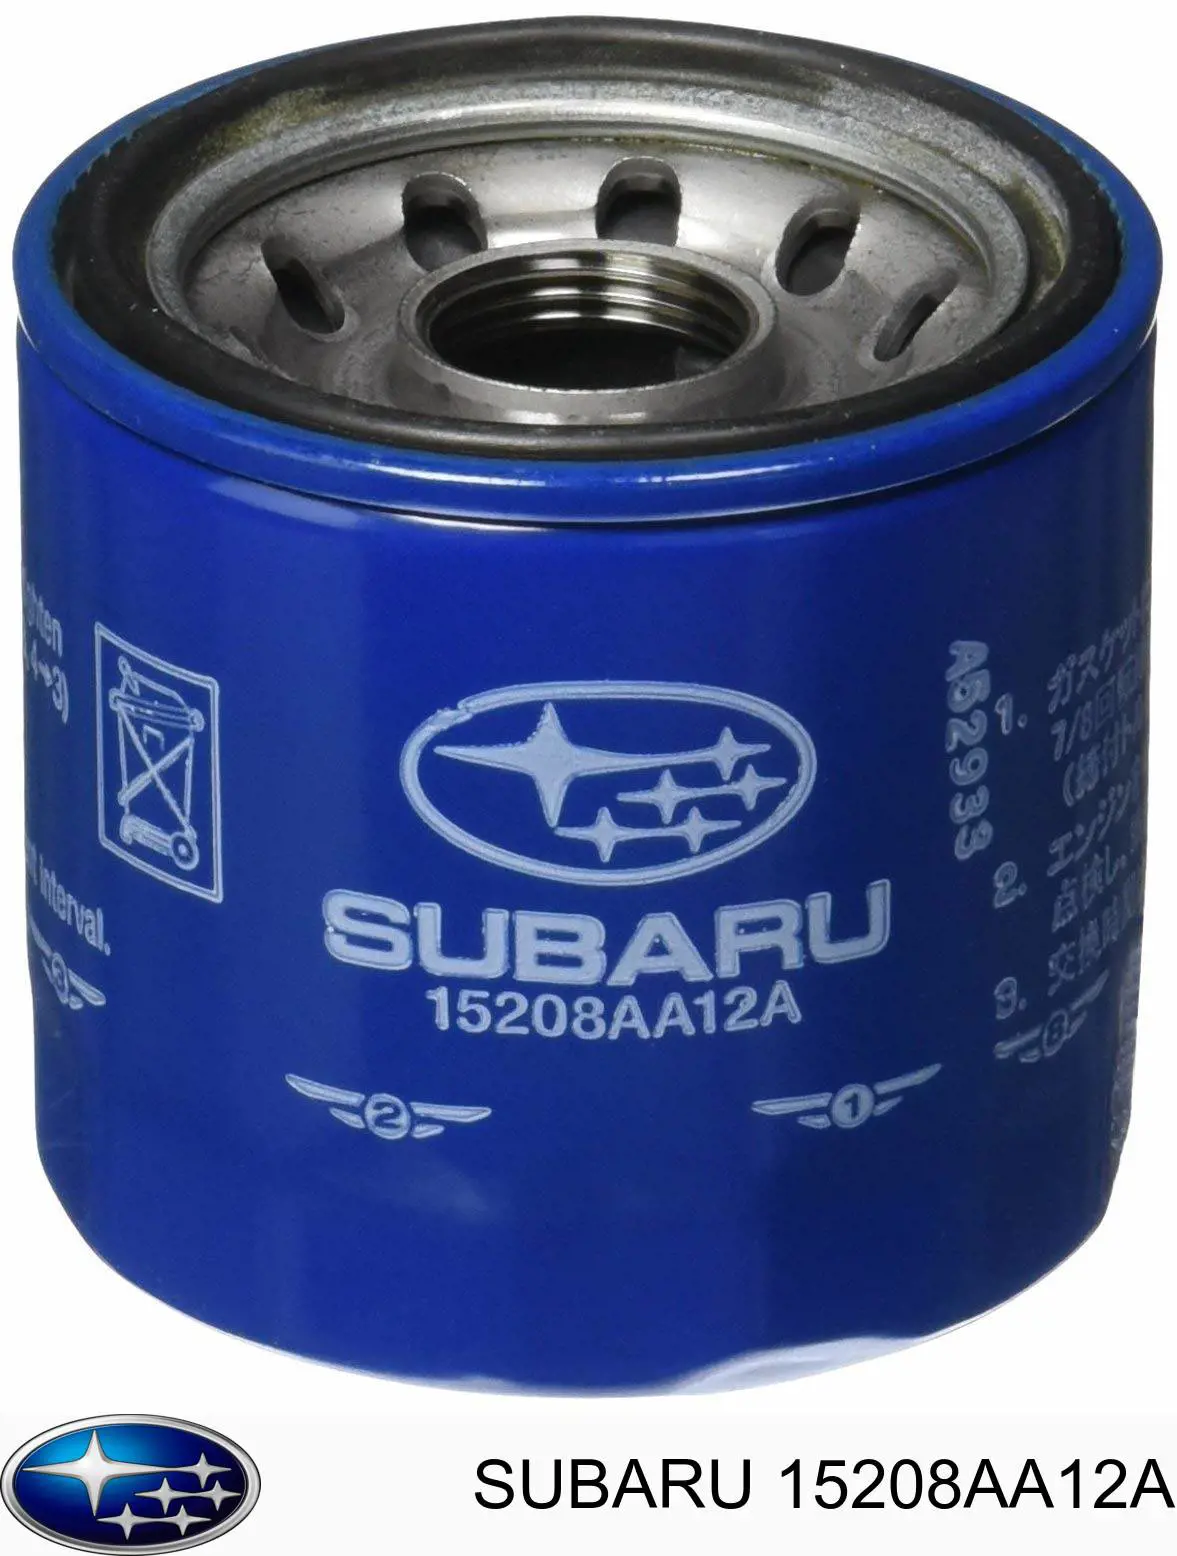 15208AA12A Subaru filtro de óleo